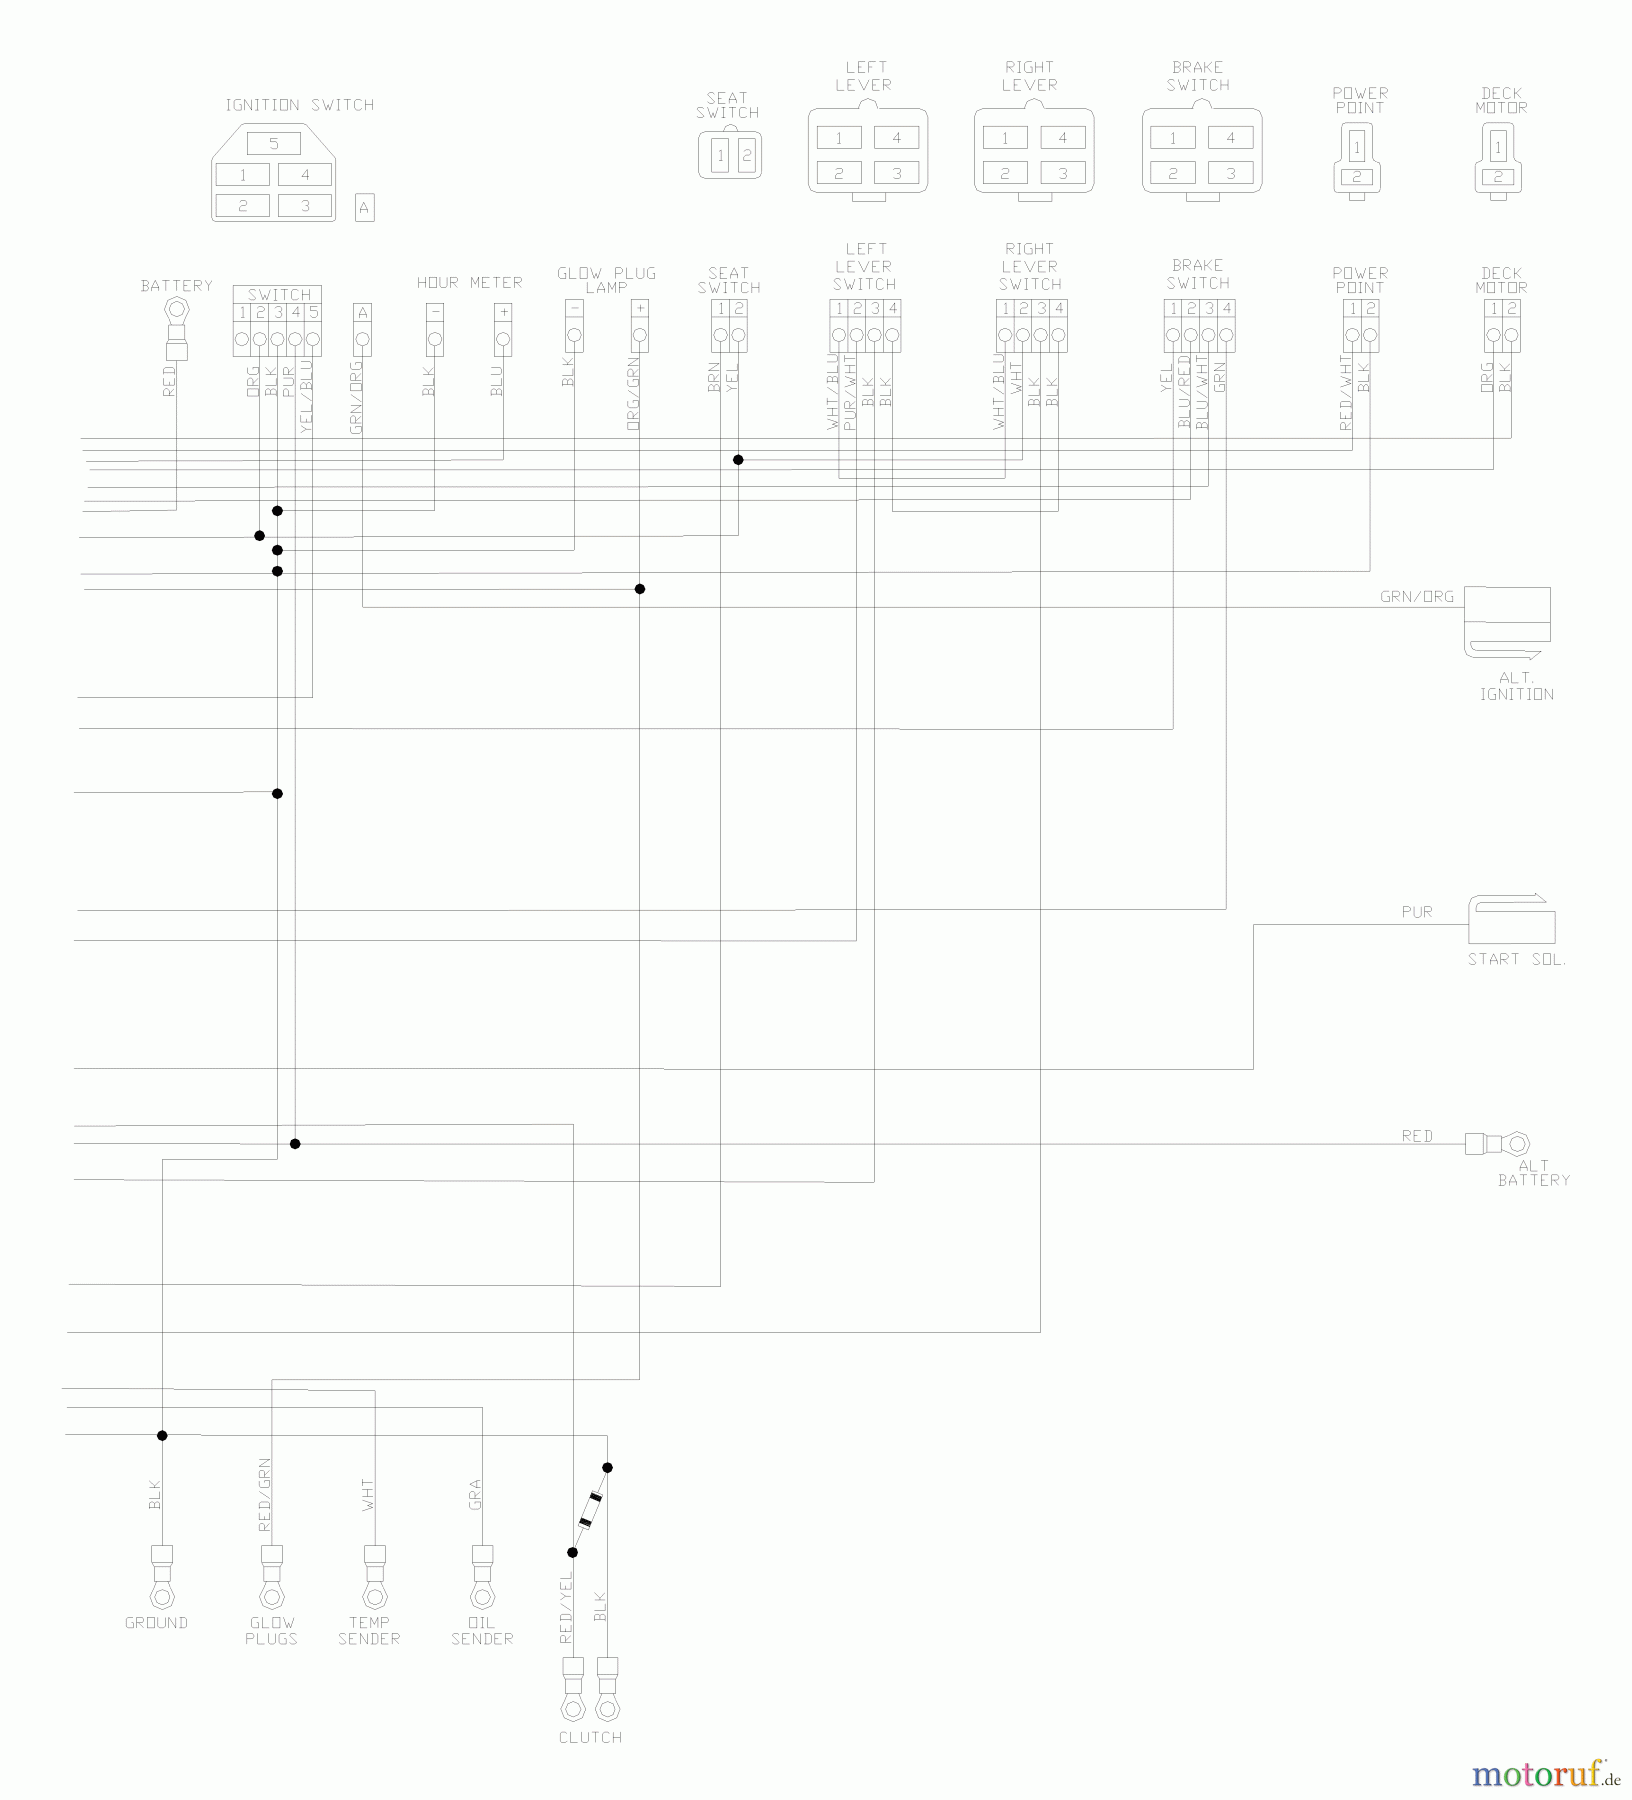  Husqvarna Nullwendekreismäher, Zero-Turn BZ 7234 D (968999216) - Husqvarna Zero-Turn Mower (2004-11 & After) (SN: 033600000 & Up) Wiring Schematic (Part 2)